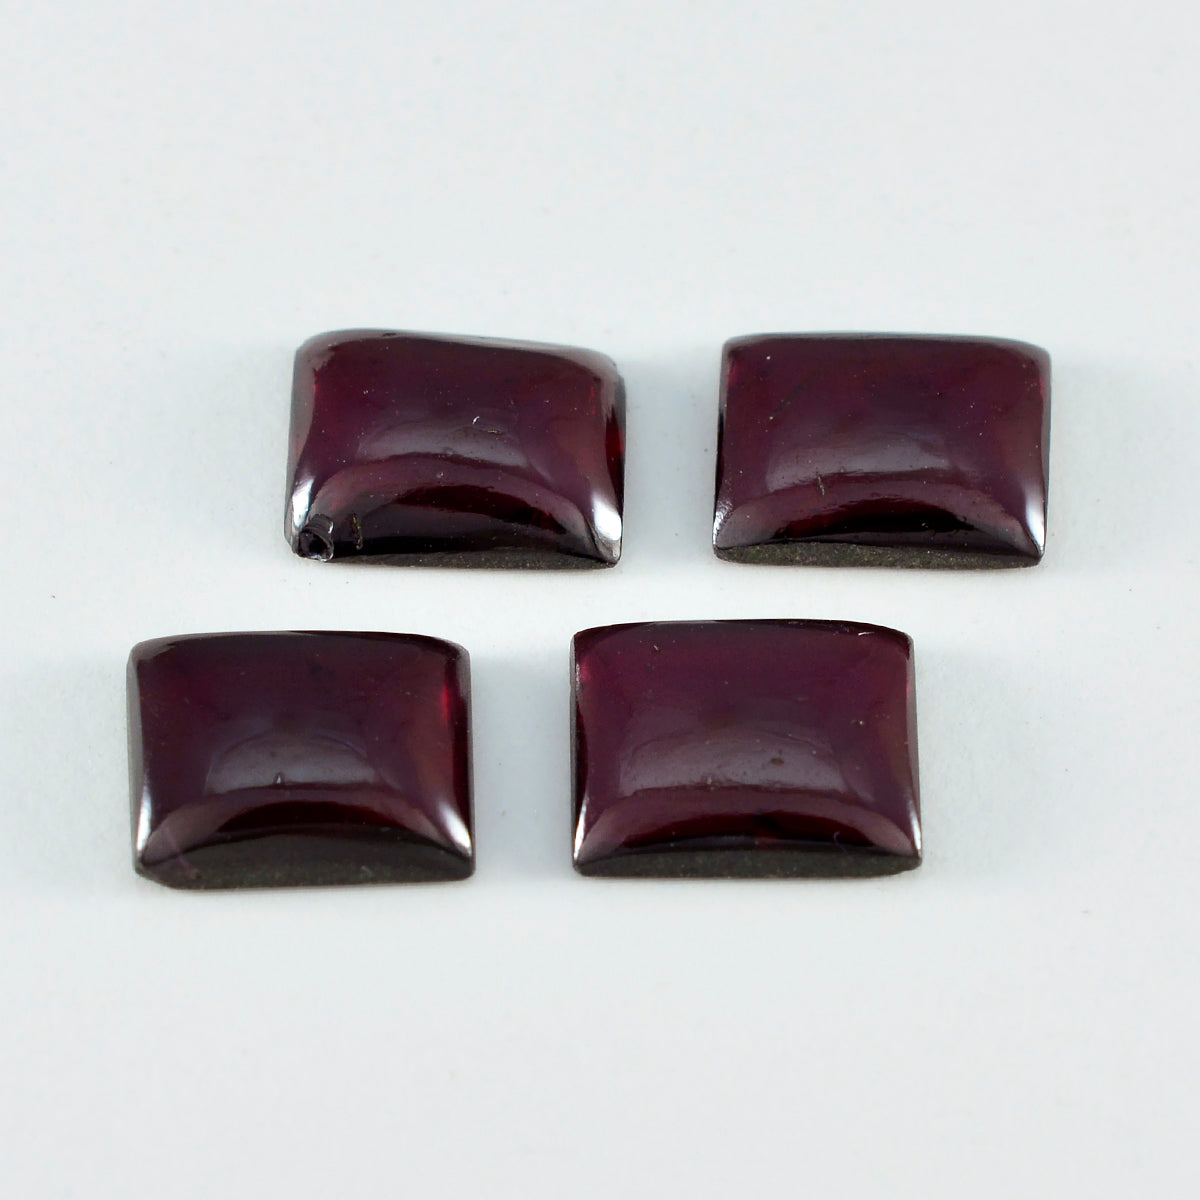 Riyogems 1PC Red Garnet Cabochon 10x12 mm Octagon Shape awesome Quality Loose Gemstone